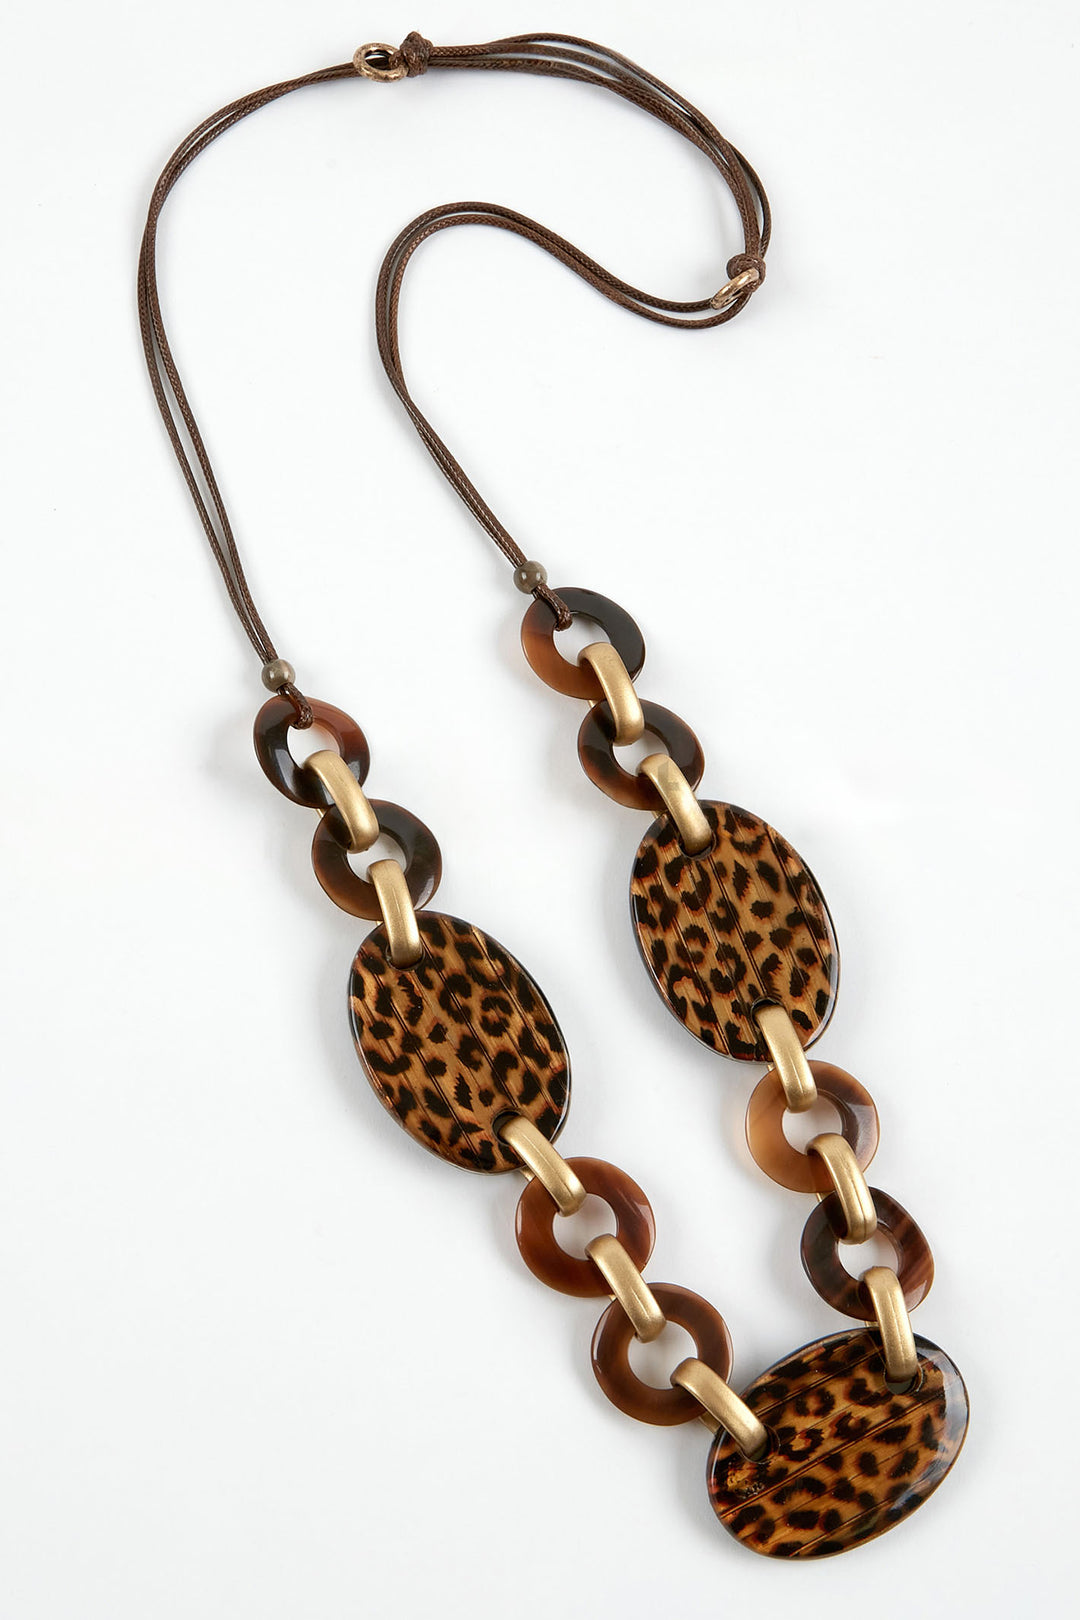 Dante NL5643 Brown Leopard Print Necklace - Experience Boutique